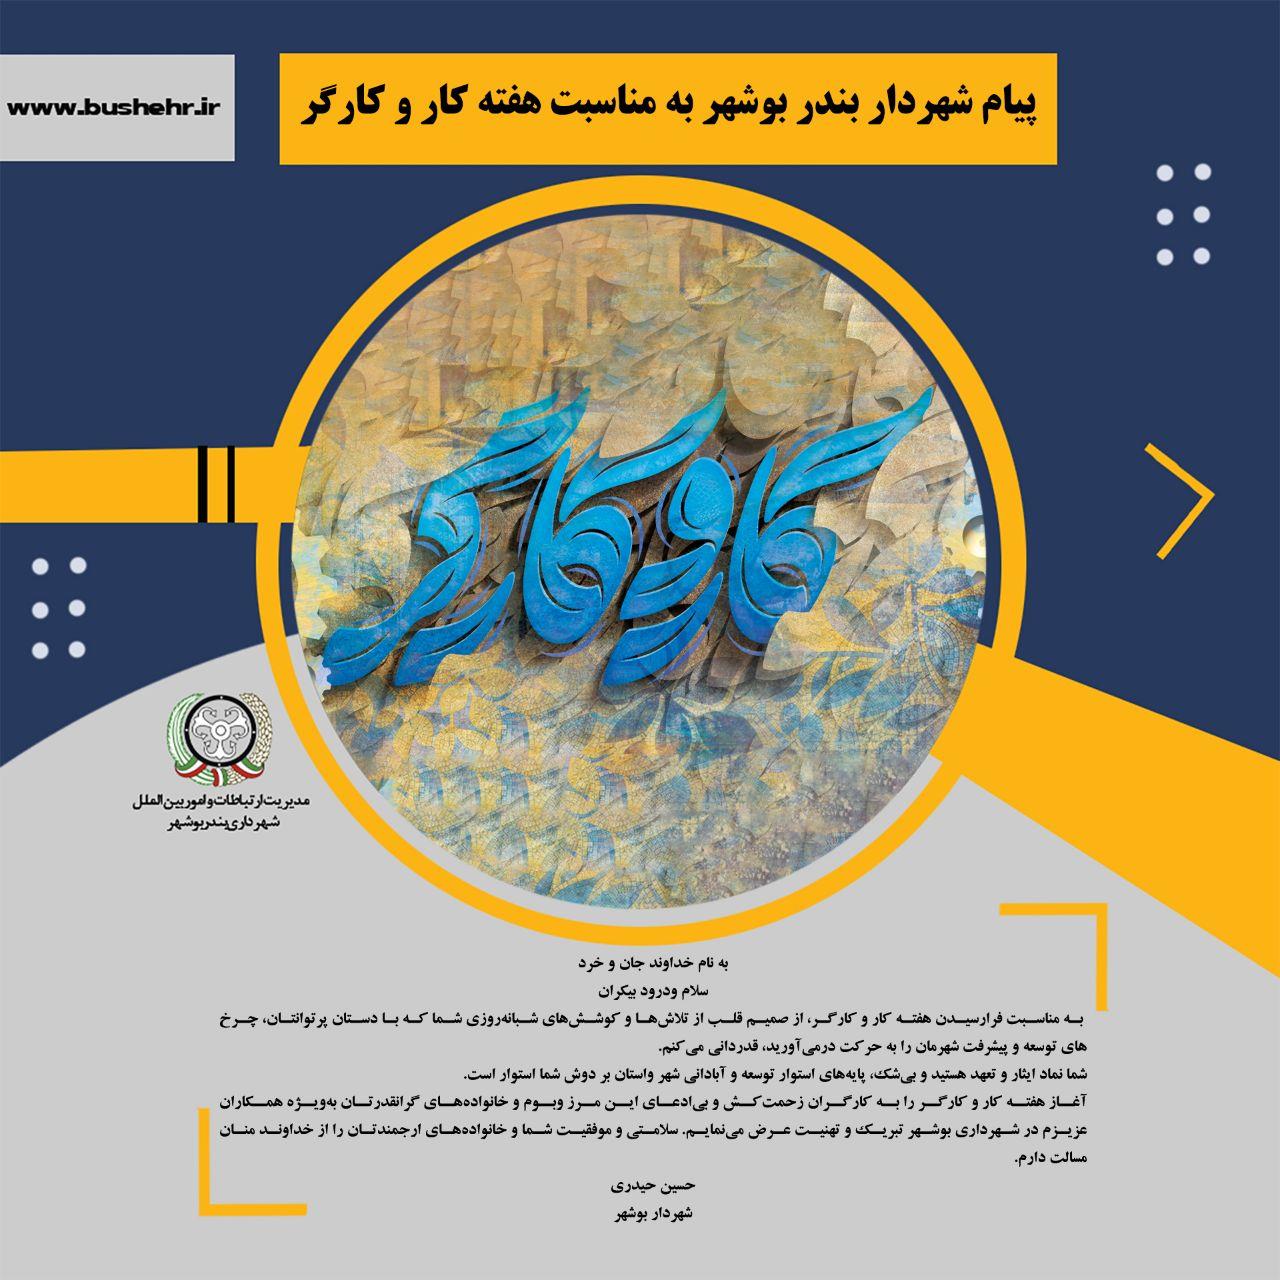 پیام شهردار بندر بوشهر به مناسبت هفته کار و کارگر